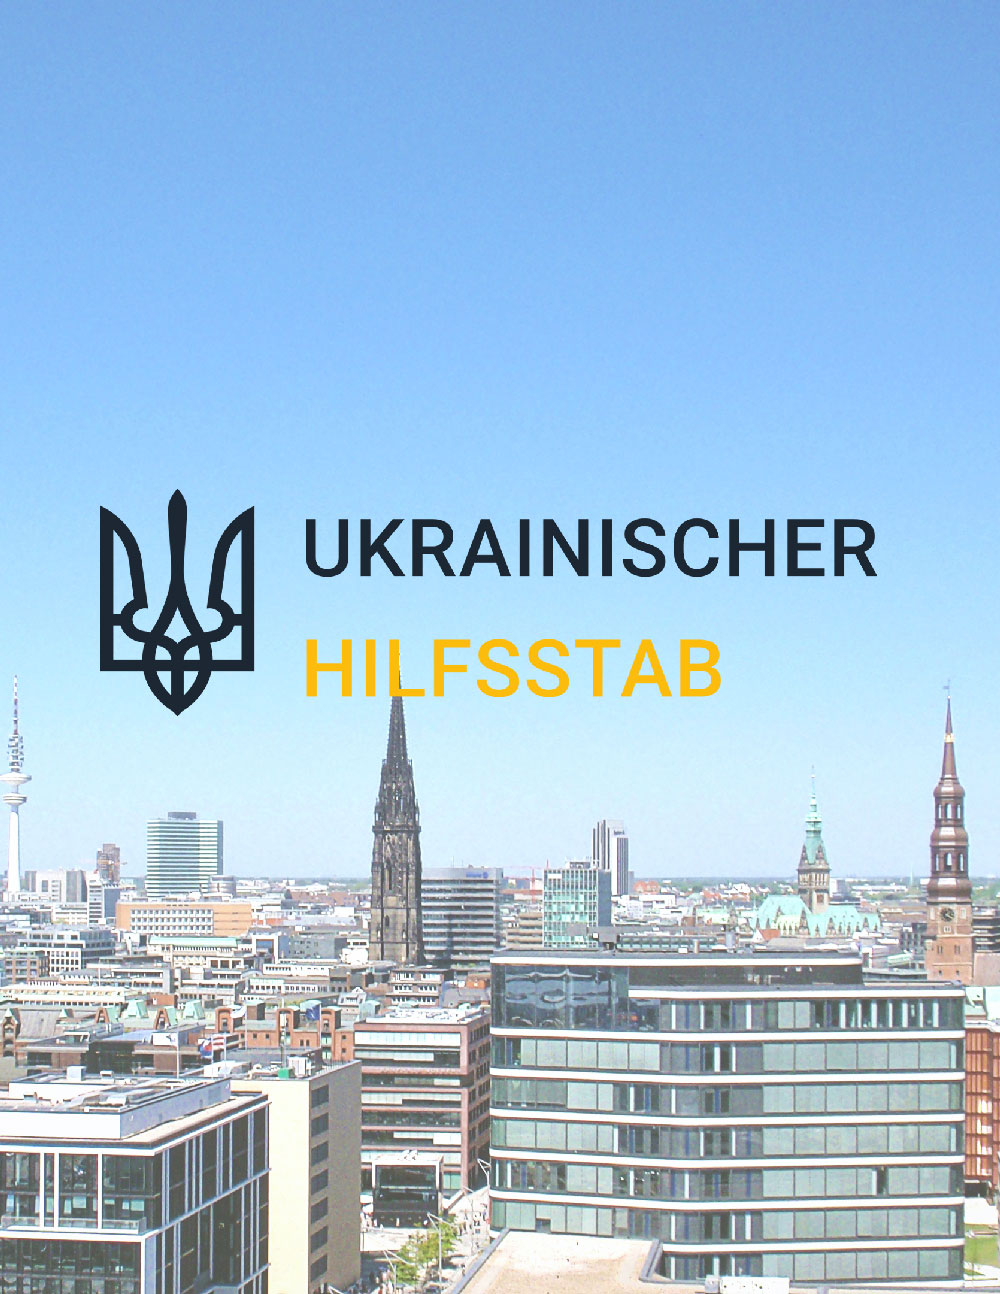 Ukrainischer Hilfsstab Hamburg